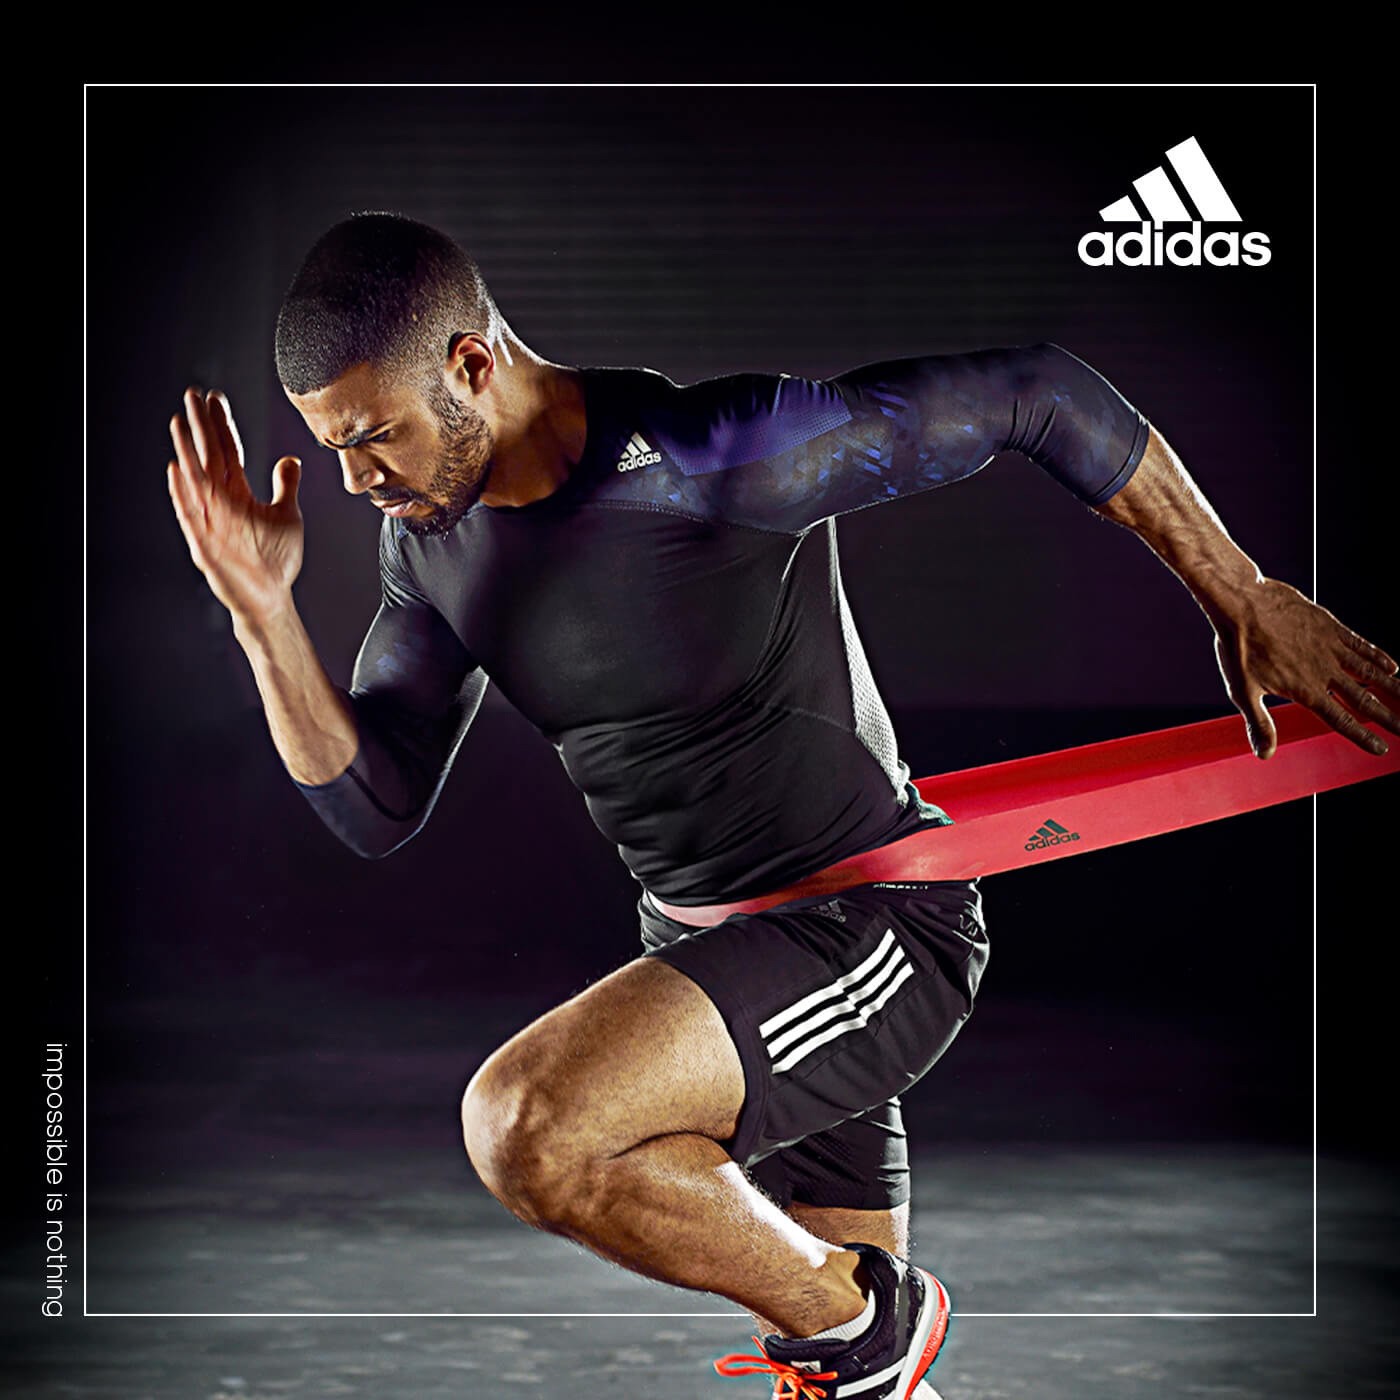 Adidas 可調式負重護腕/護踝 2公斤 X 2入提升肌耐力及爆發力